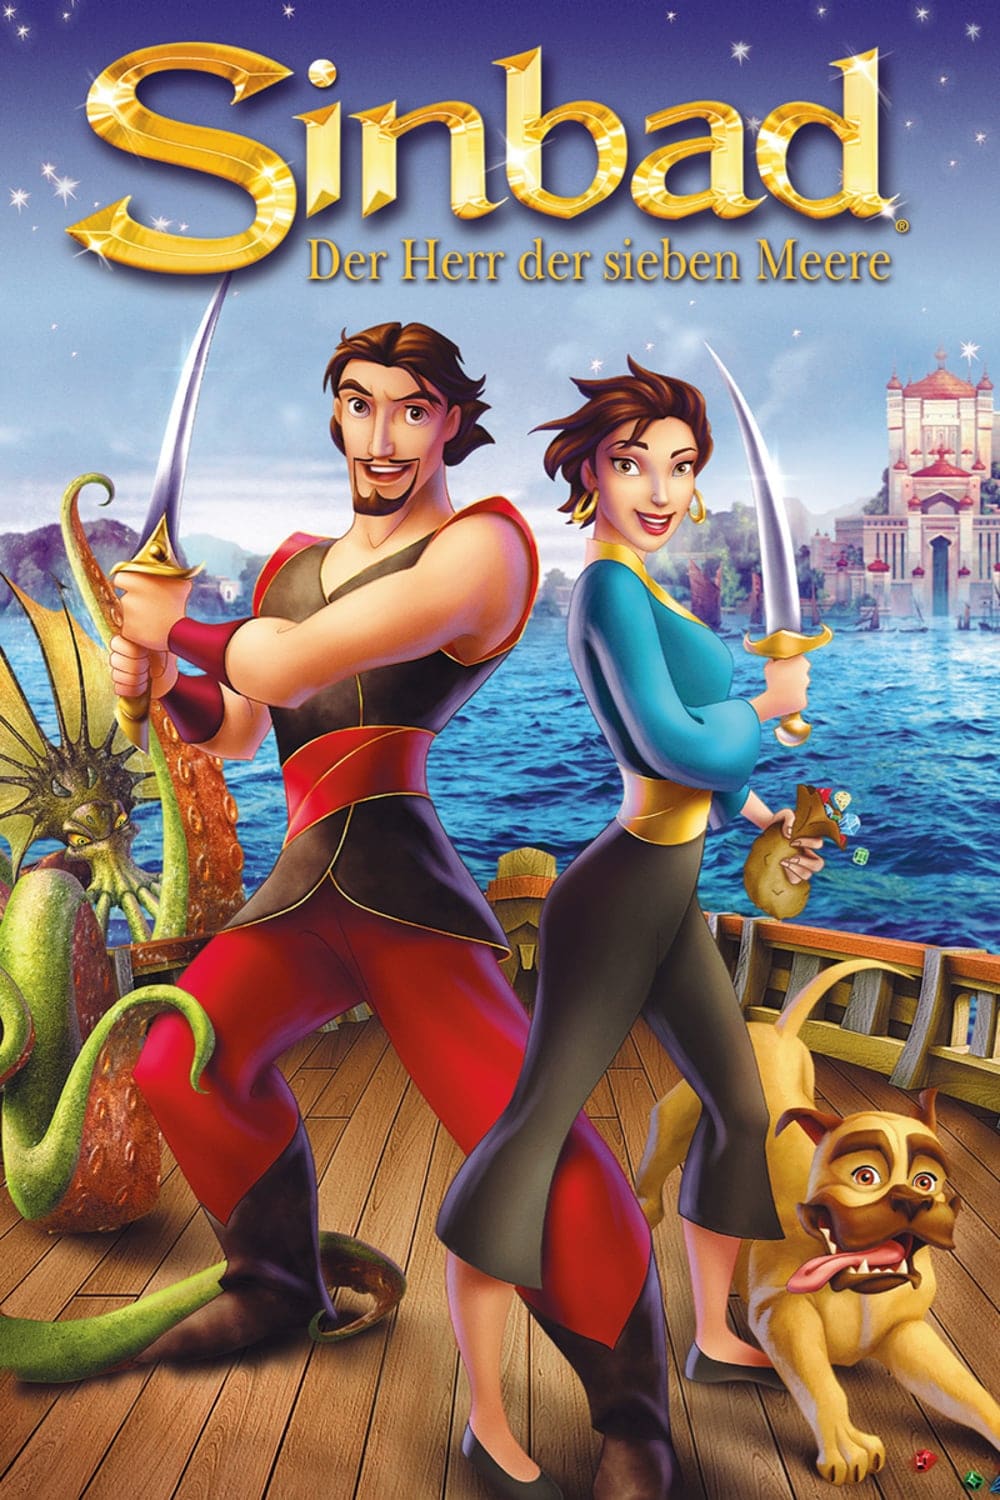 Plakat von "Sinbad - Der Herr der sieben Meere"